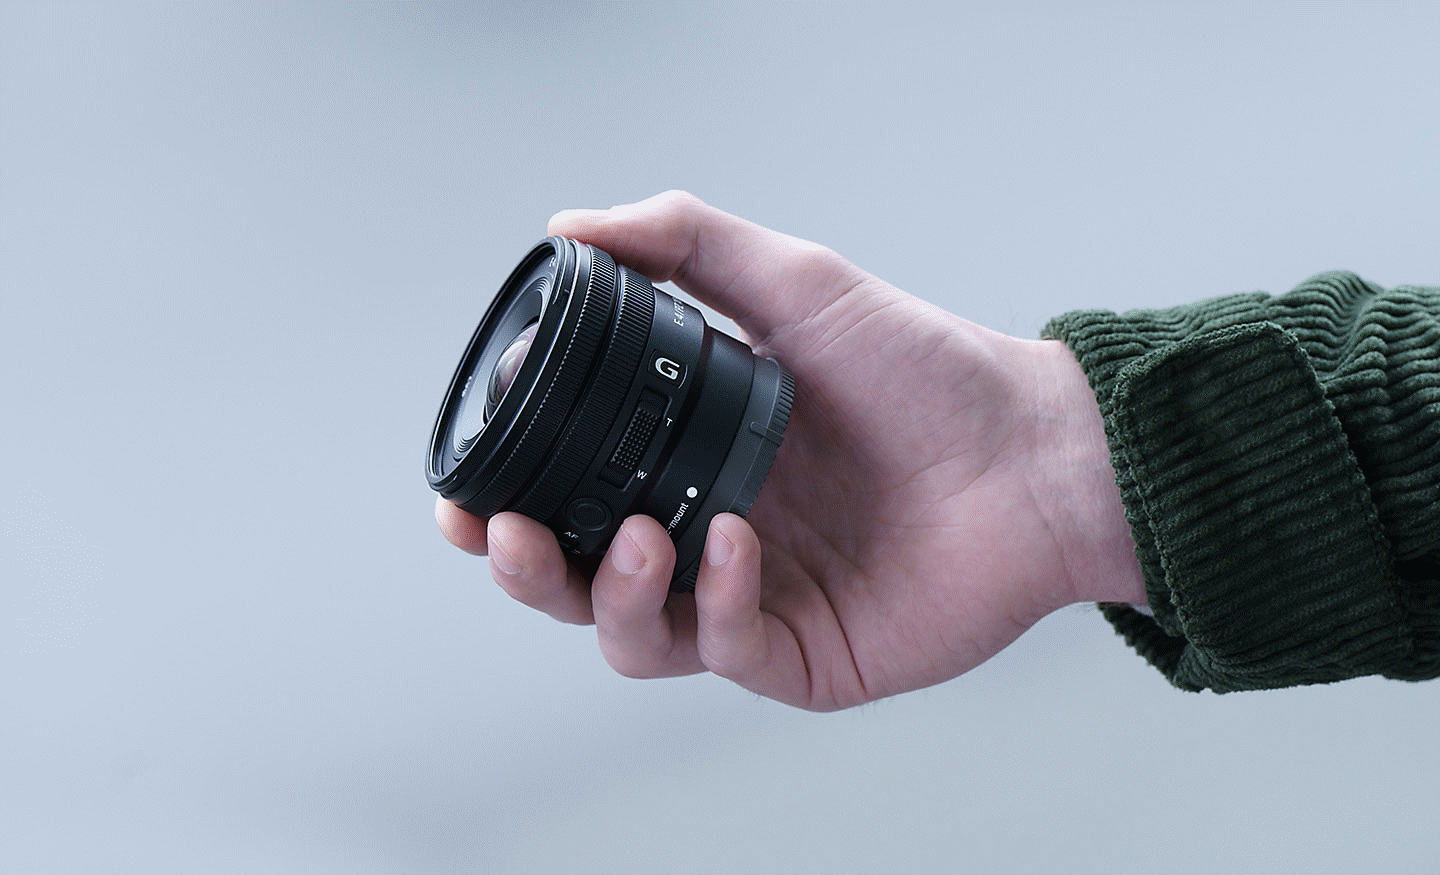 Gambar tangan seseorang memegang E PZ 10-20mm F4 G, memperlihatkan bahwa lensa ini cukup kecil dipegang tangan